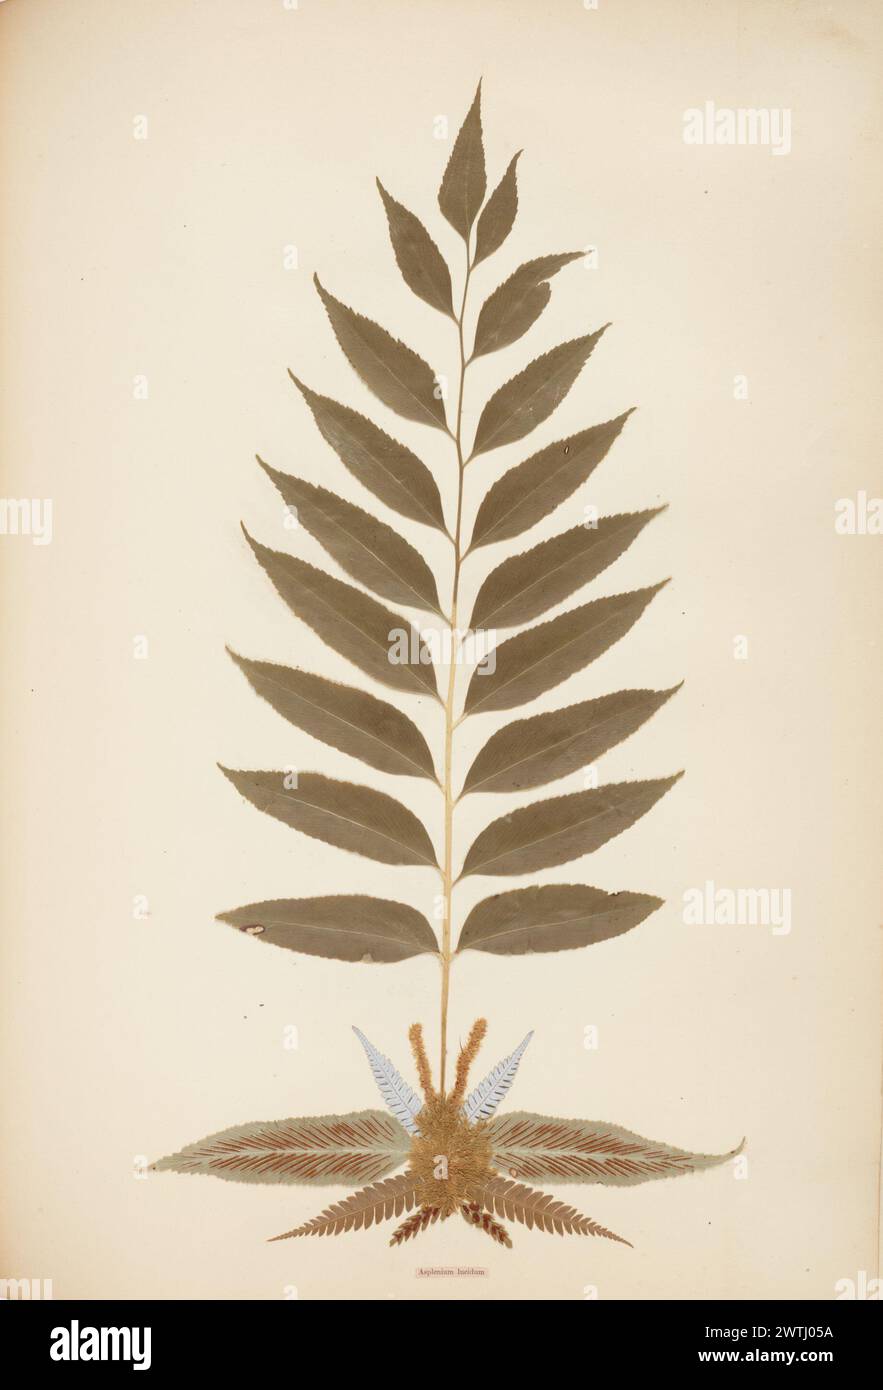 Pressed and mounted fern specimen: Asplenium lucidum albums, ferns Stock Photo